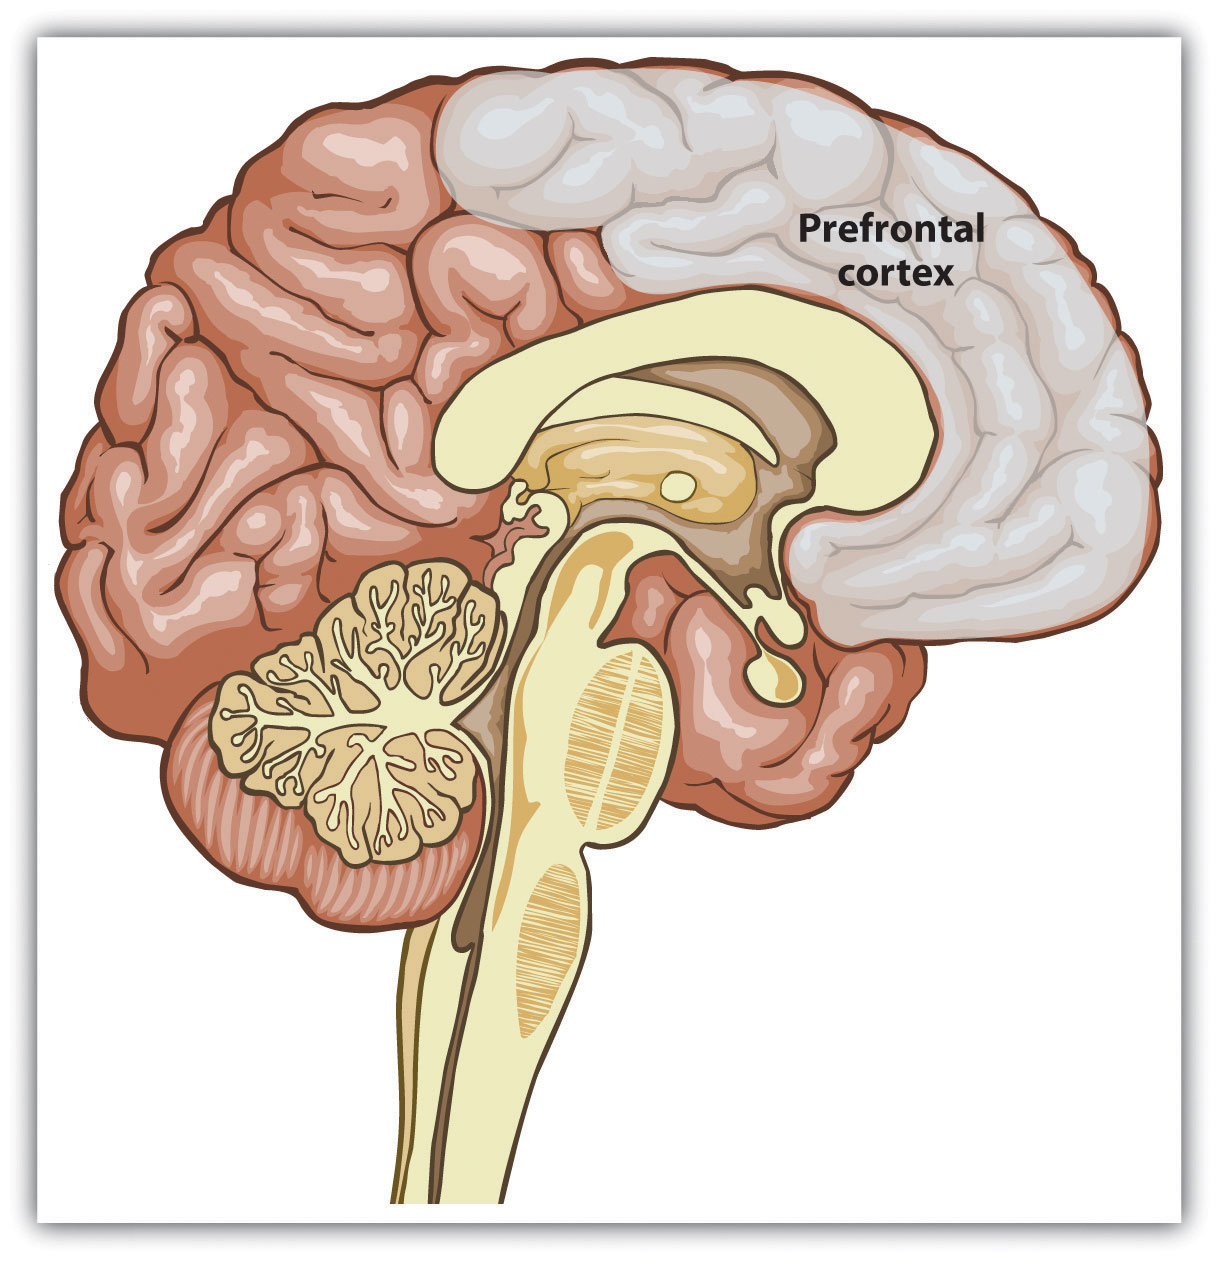 The prefrontal cortex